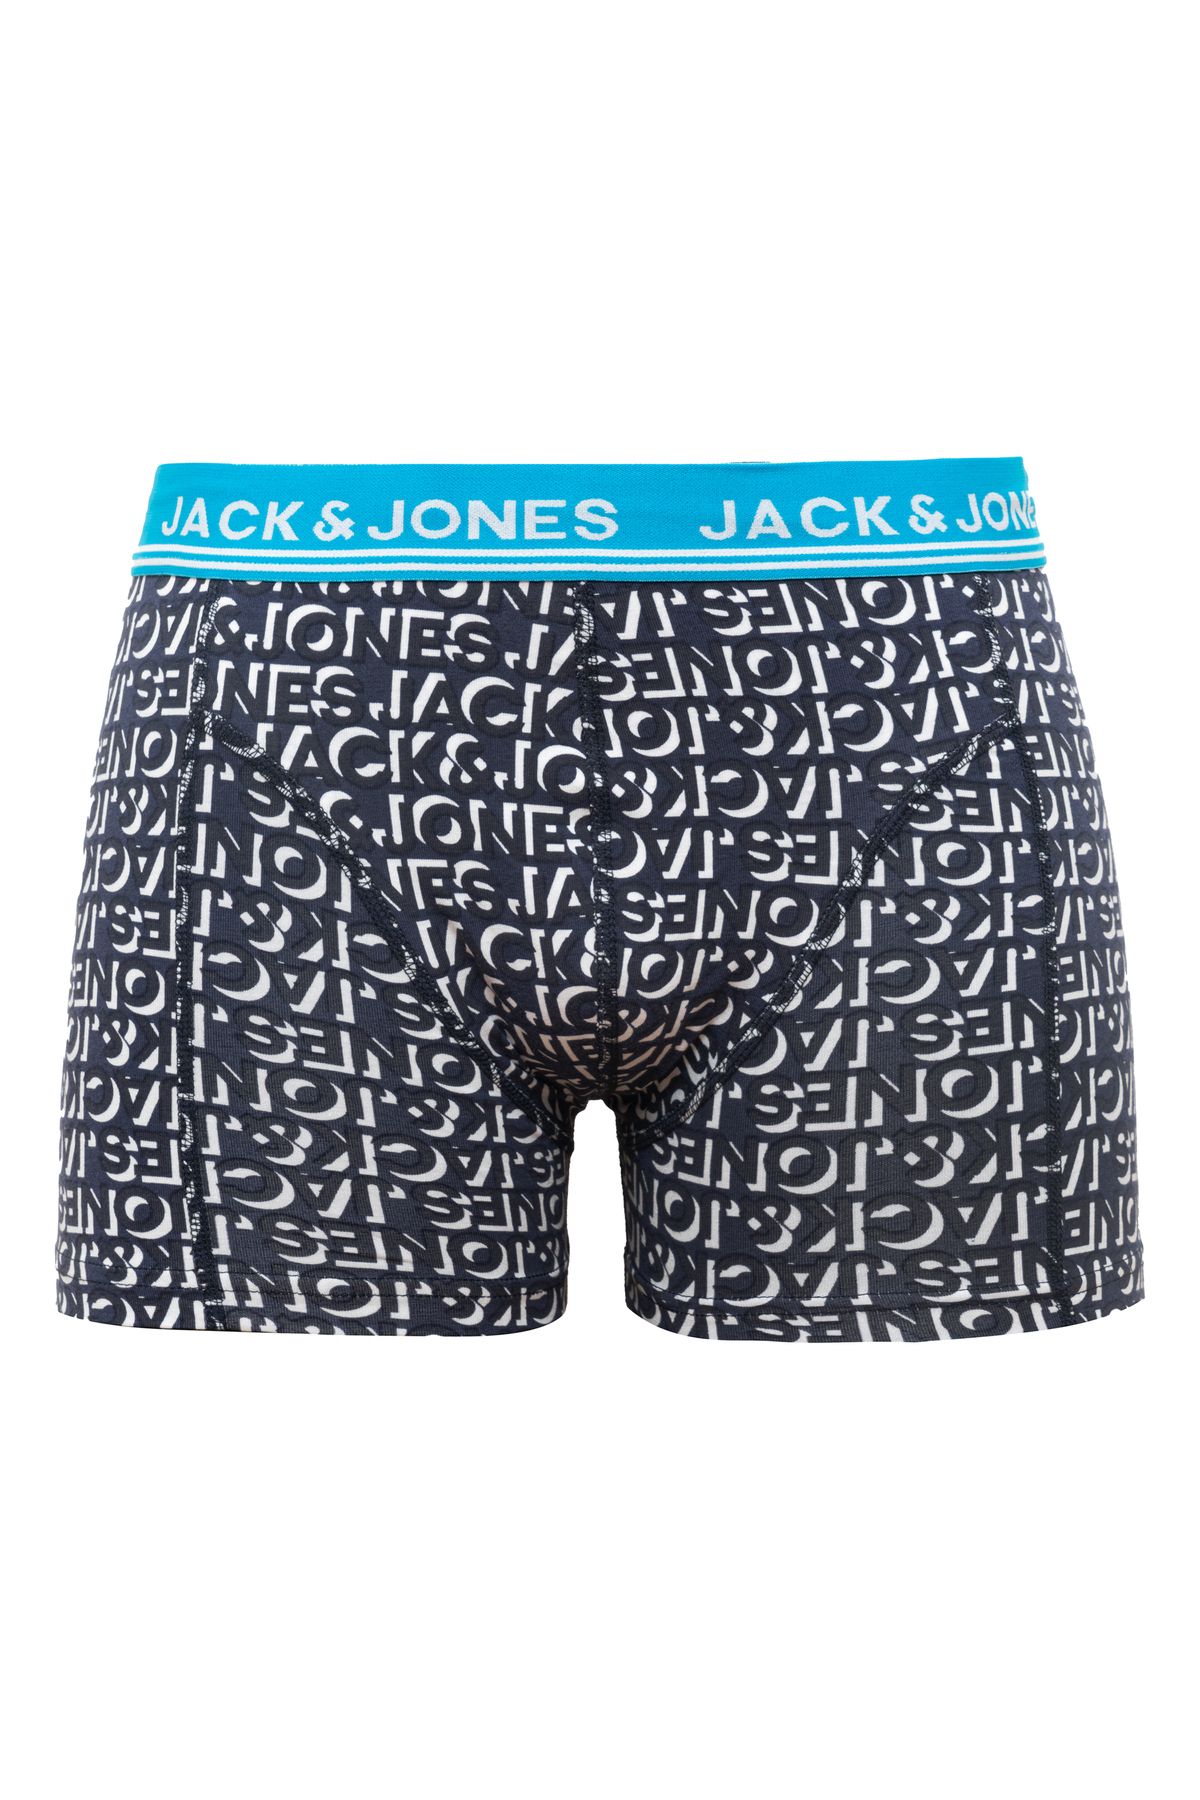 Jack & Jones Tekli Logo Desenli Boxer - Kyle